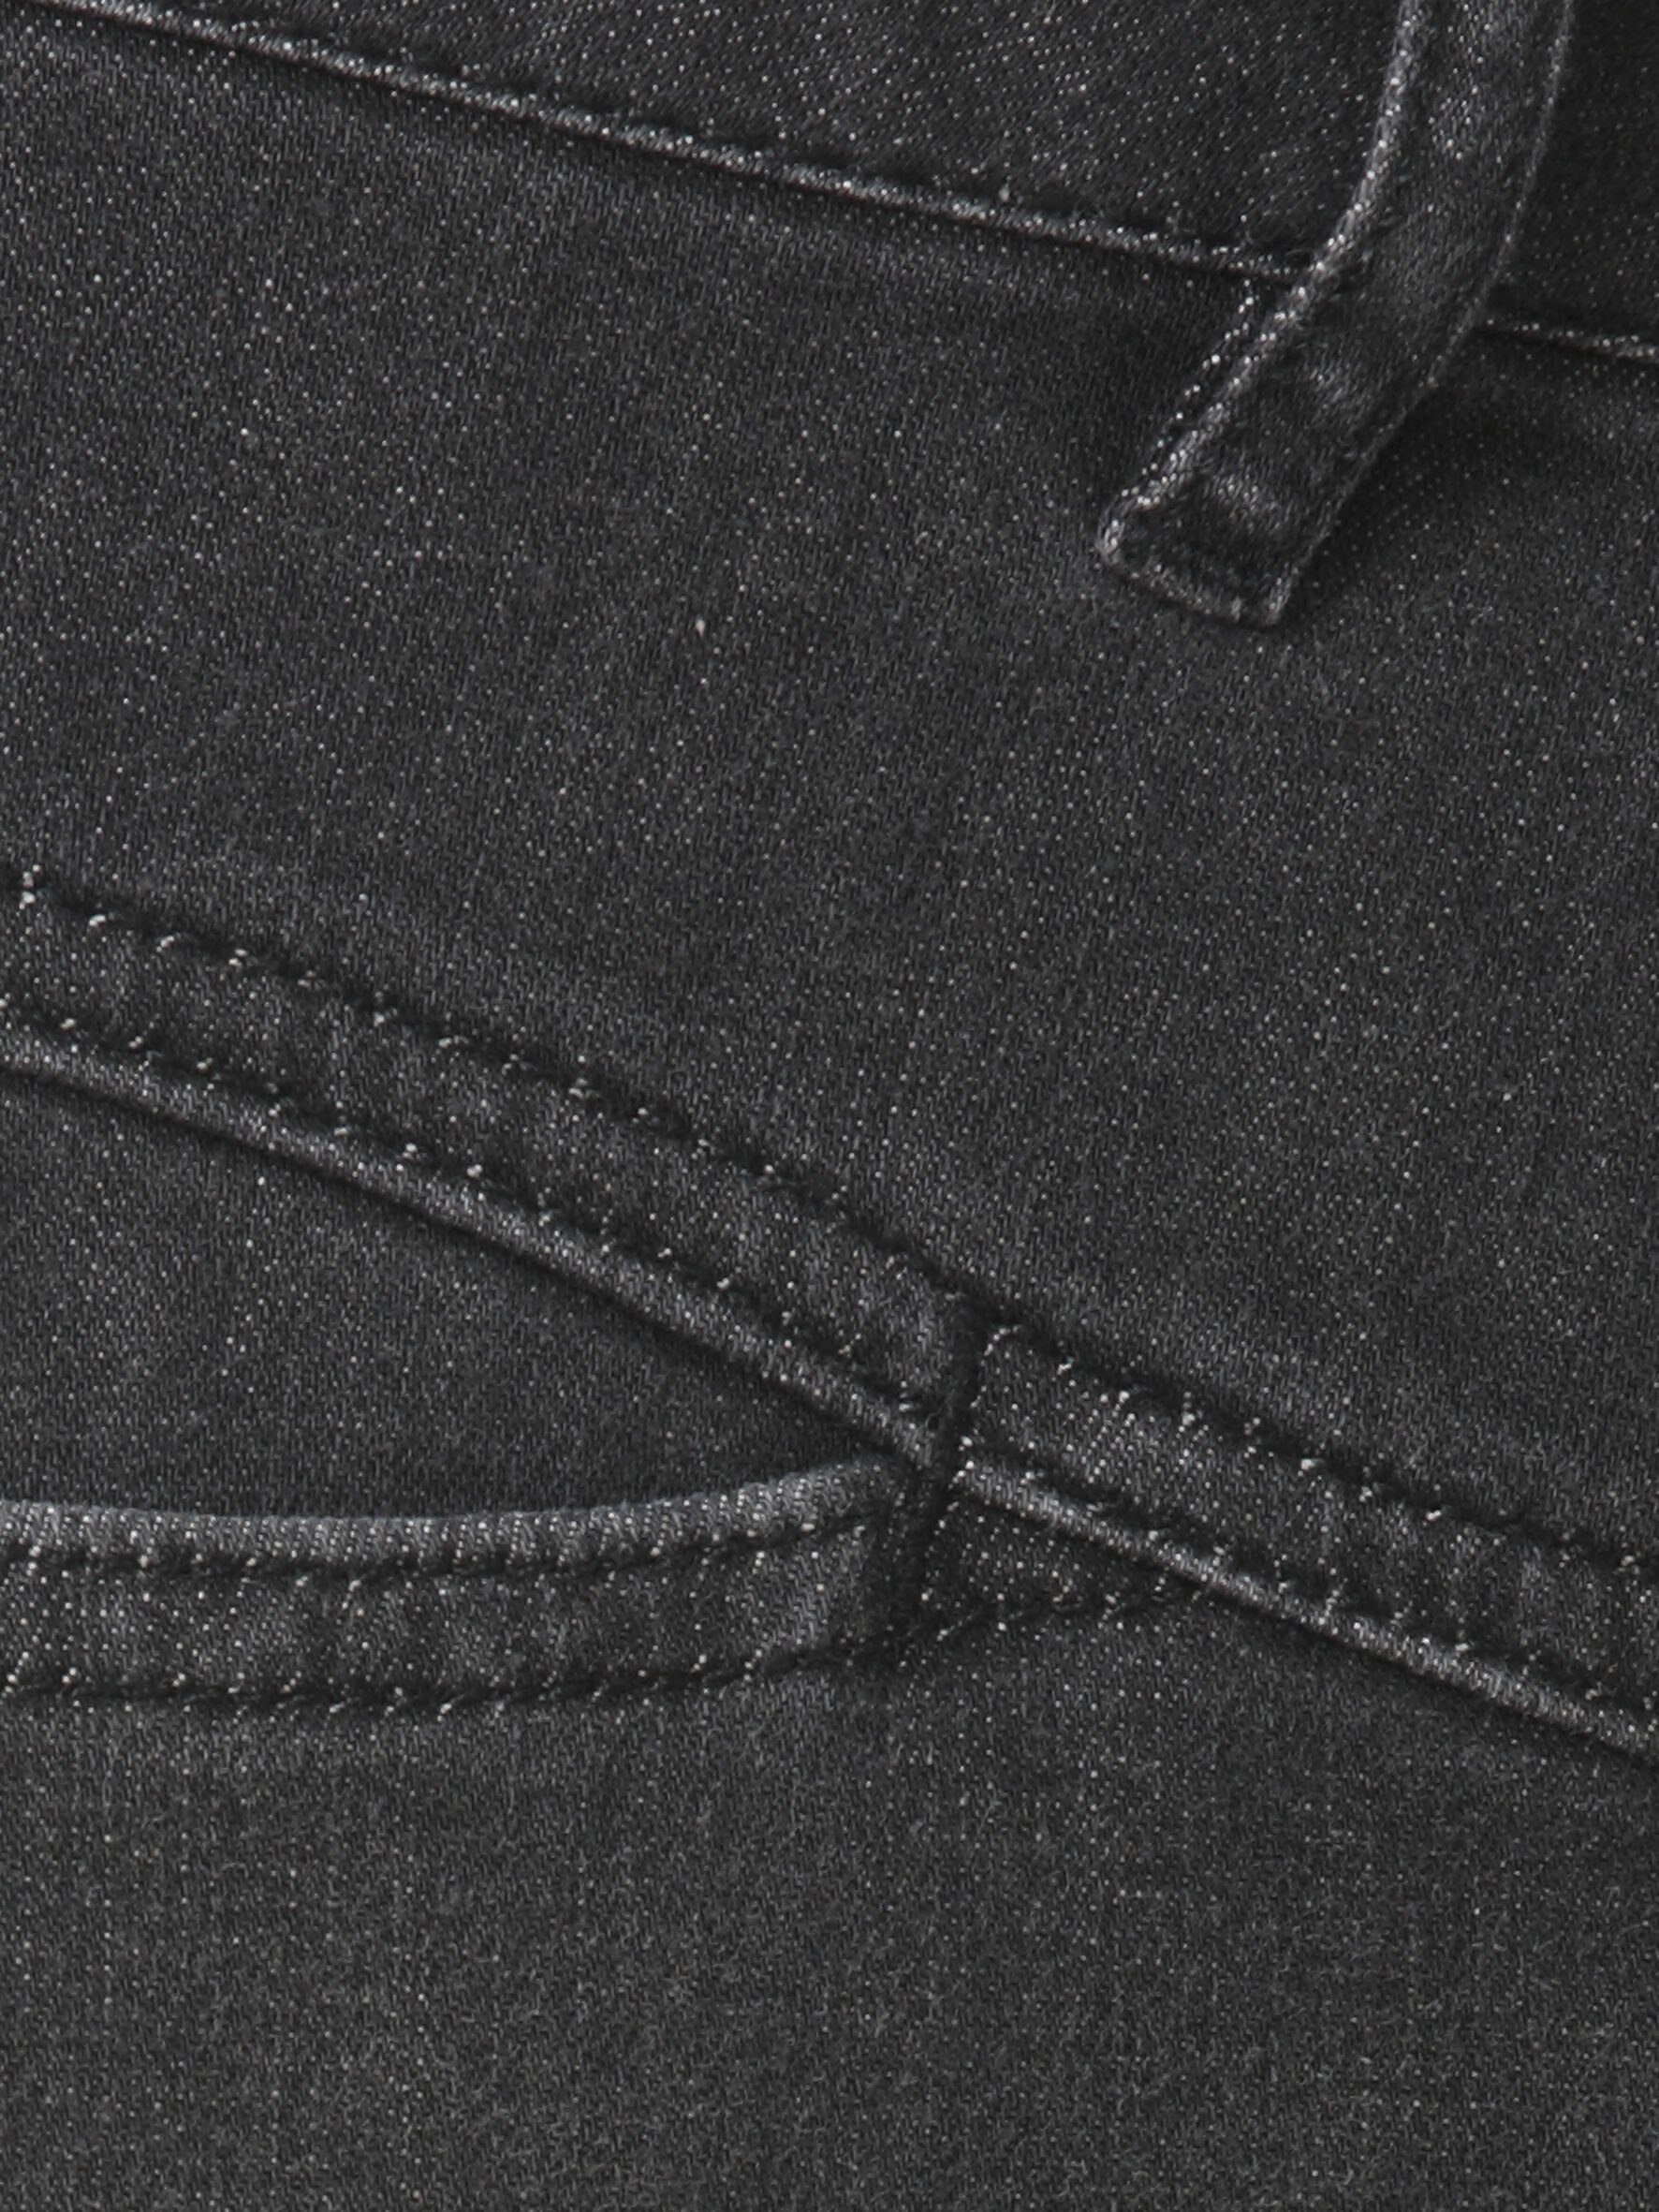 FRAPP Slim-fit-Jeans mit trendigen Ziernähten grey mid denim